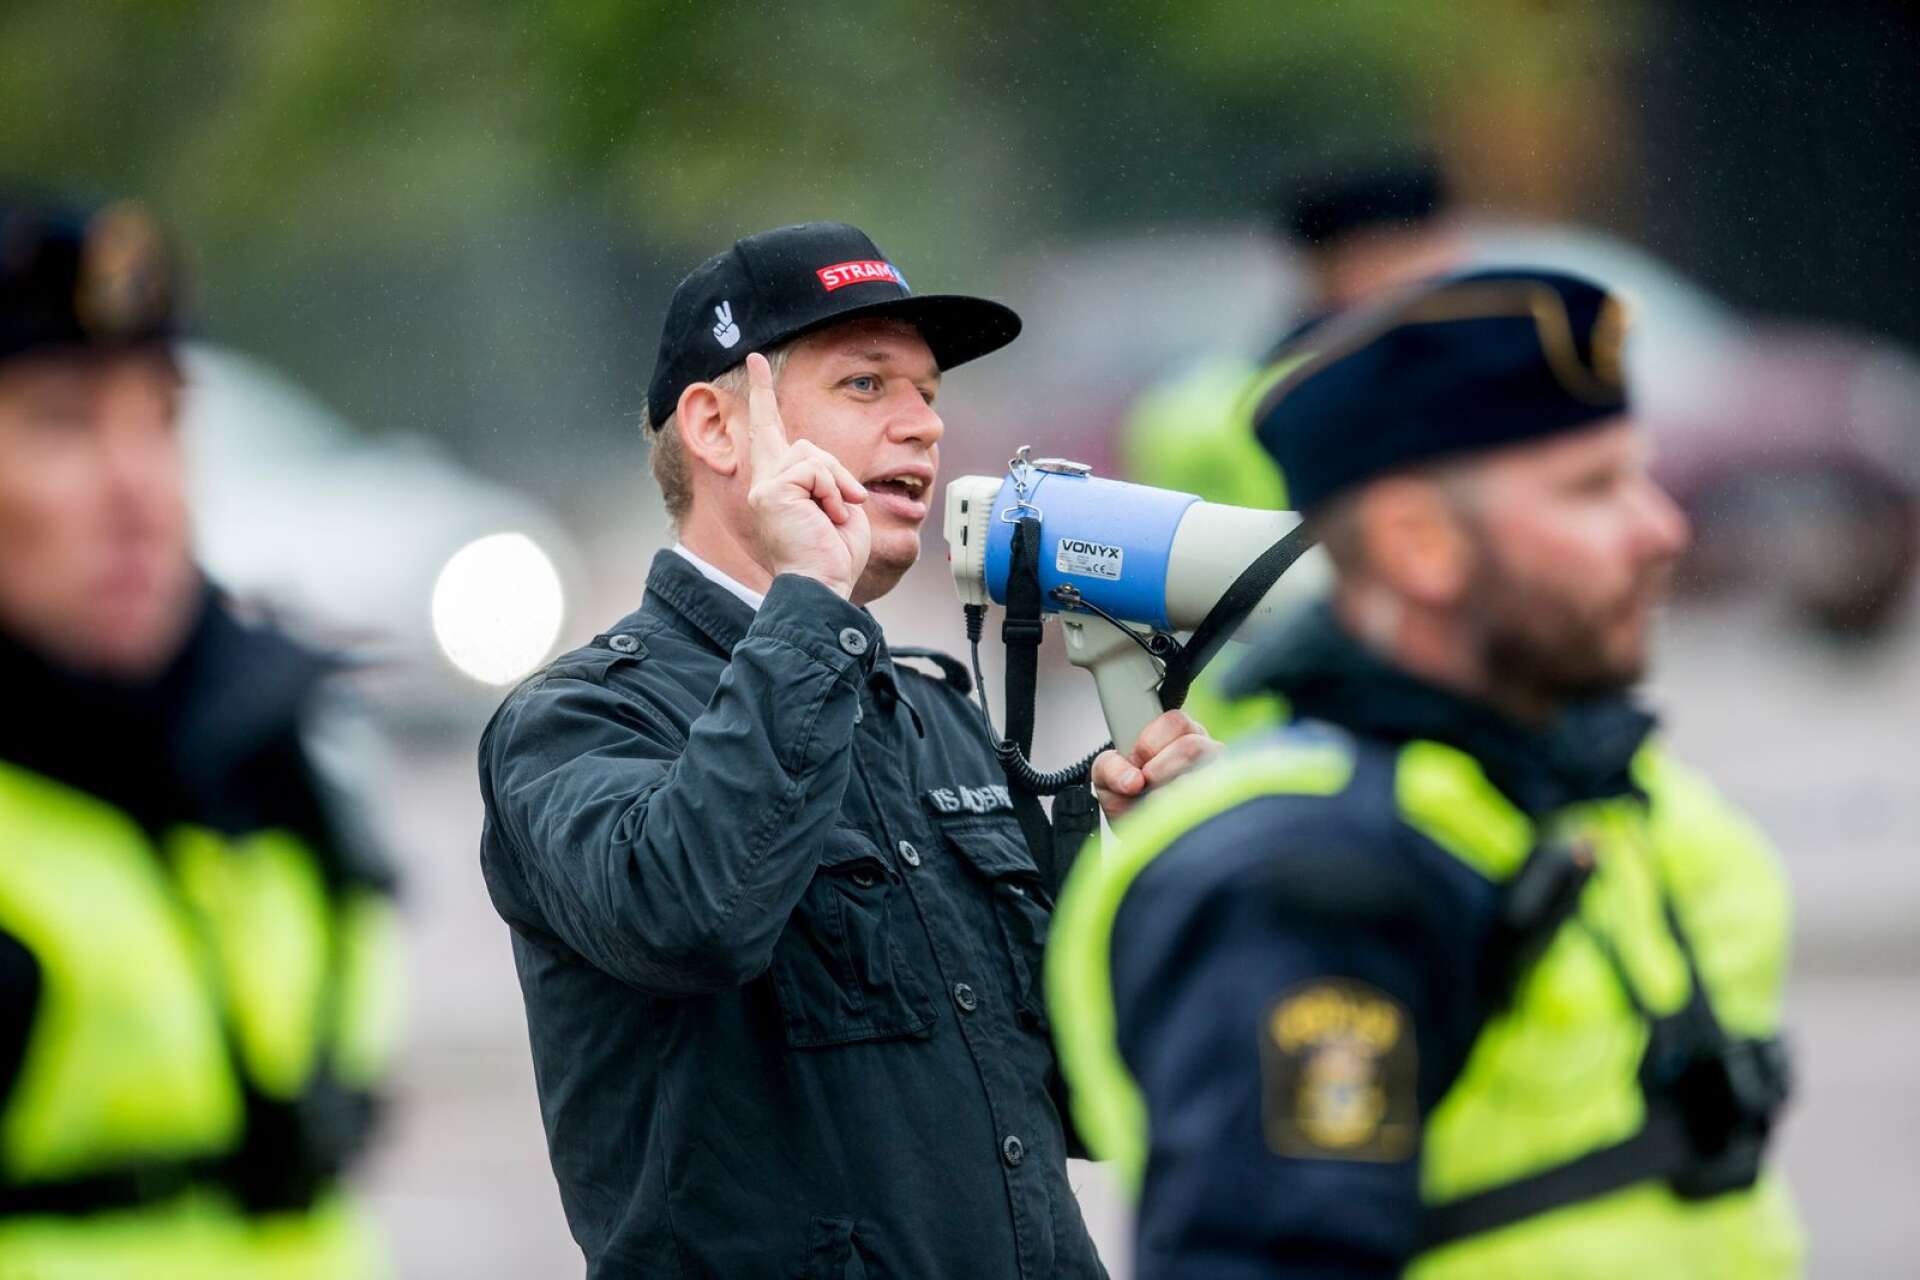 Den danske högerextremistern Rasmus Paludan fick stor uppmärksamhet tidigare i år, då han brände koranen under flera demonstrationer i Sverige.